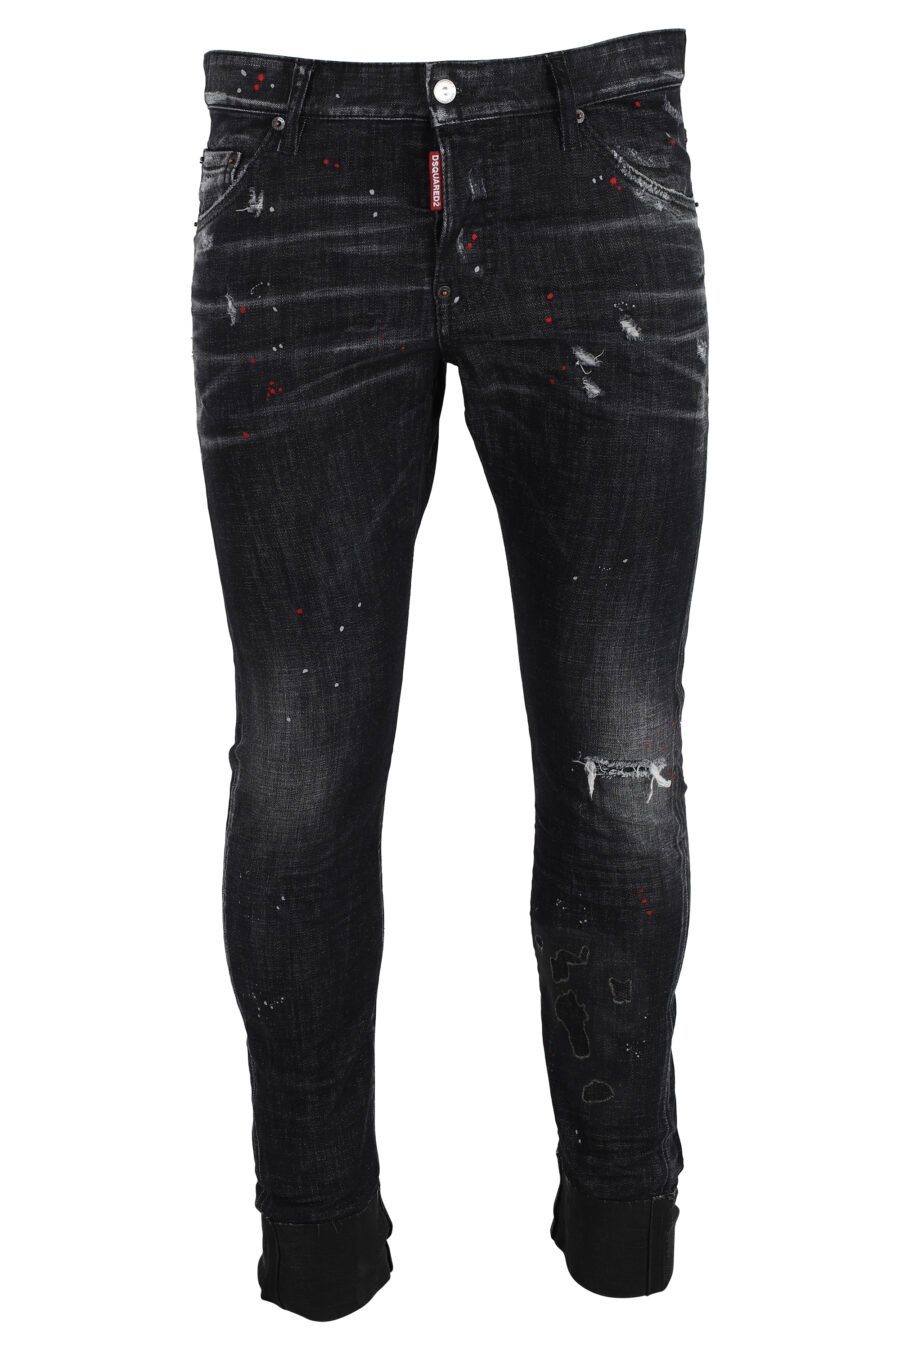 Pantalón vaquero "sexy twist jean" negro desgastado - IMG 4852